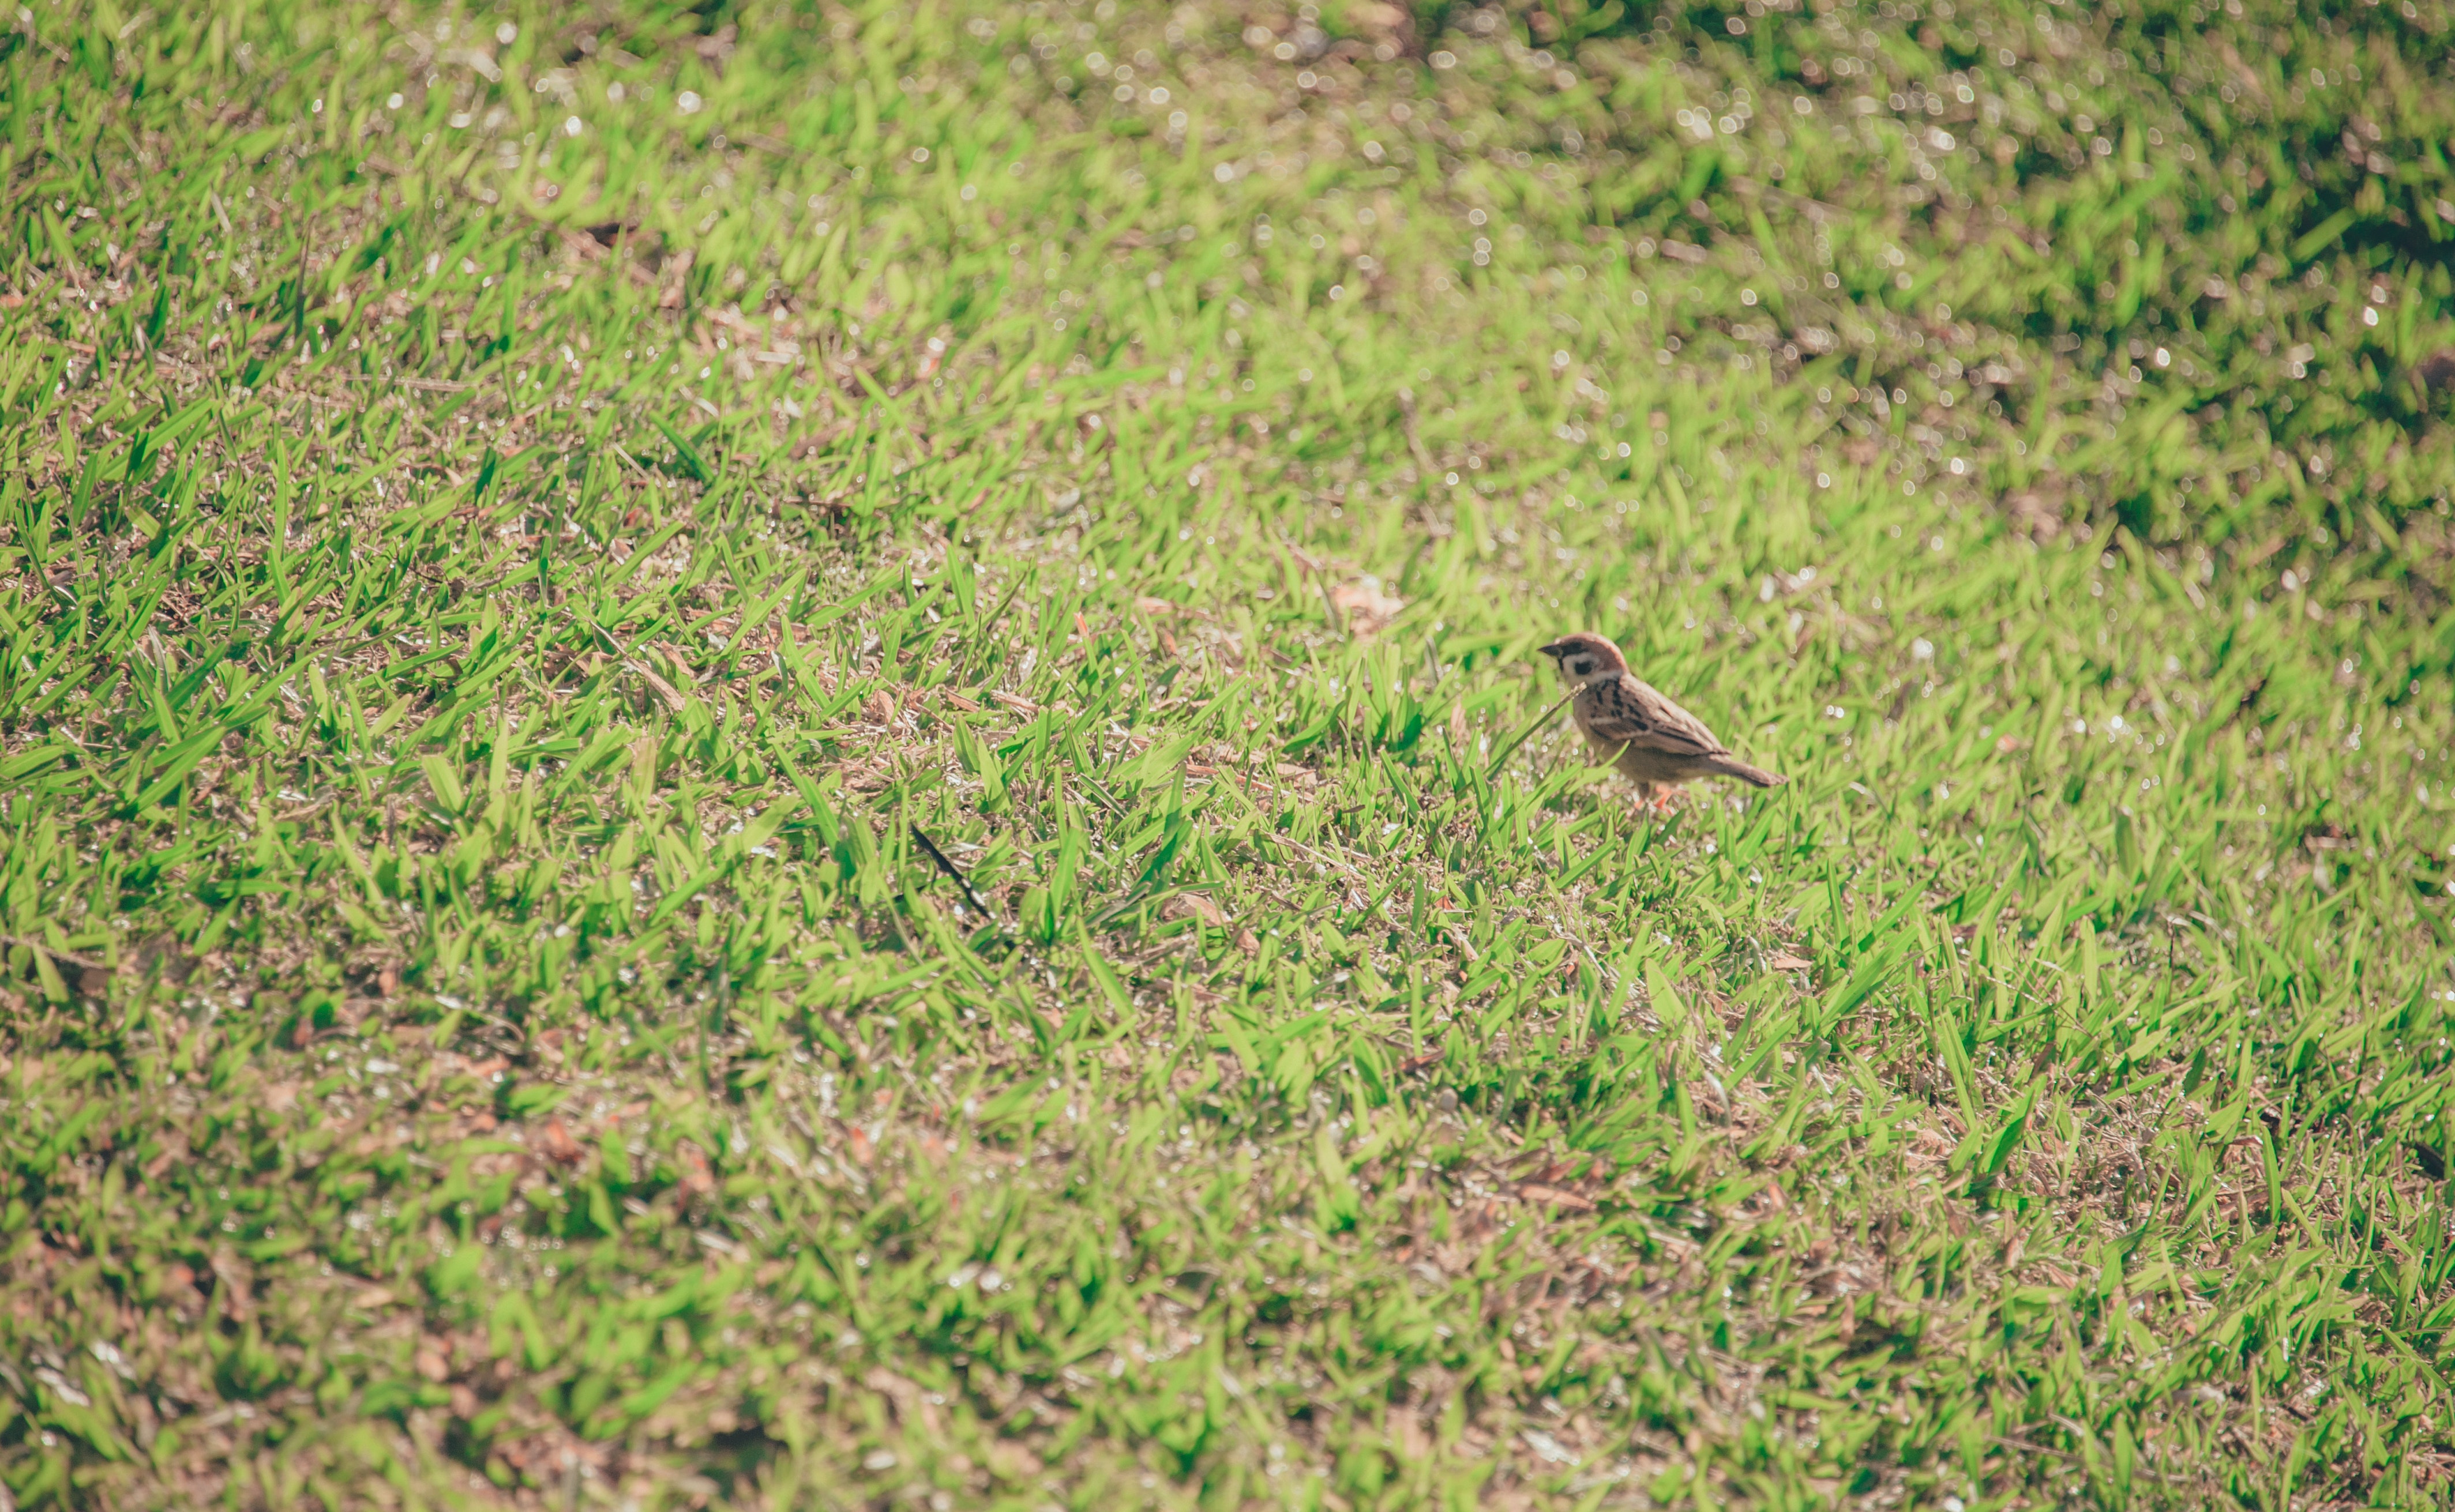 Brown bird on grass lawn photo